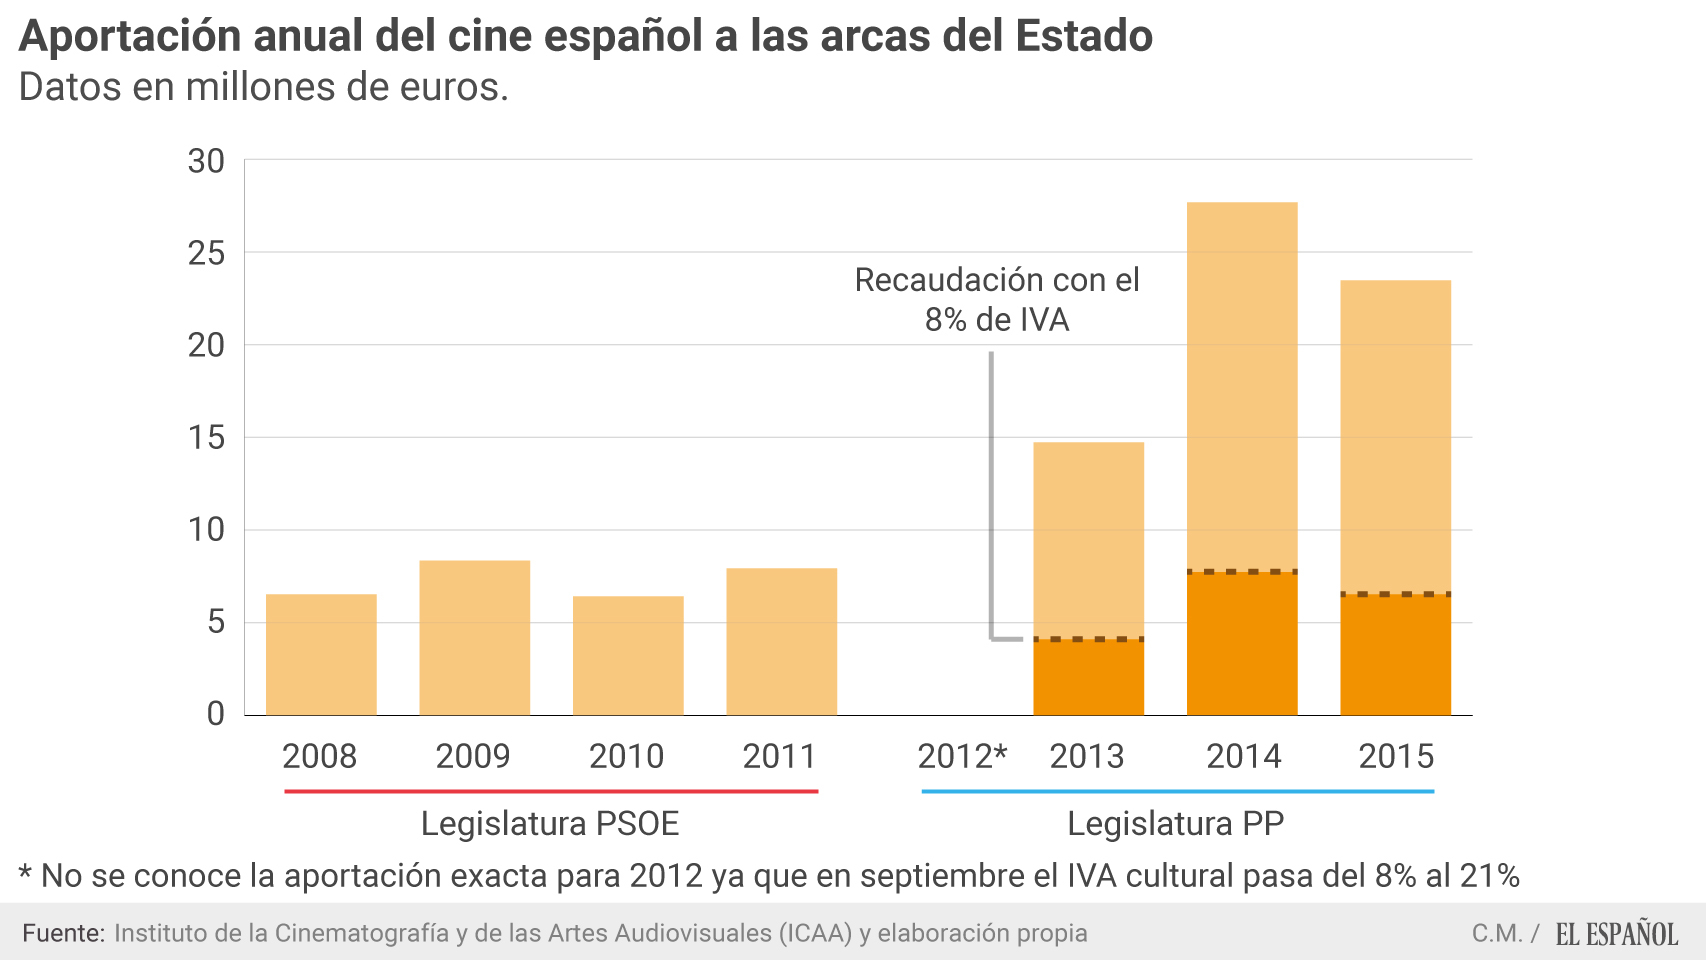 Aportación anual del cine español a las arcas del estado.